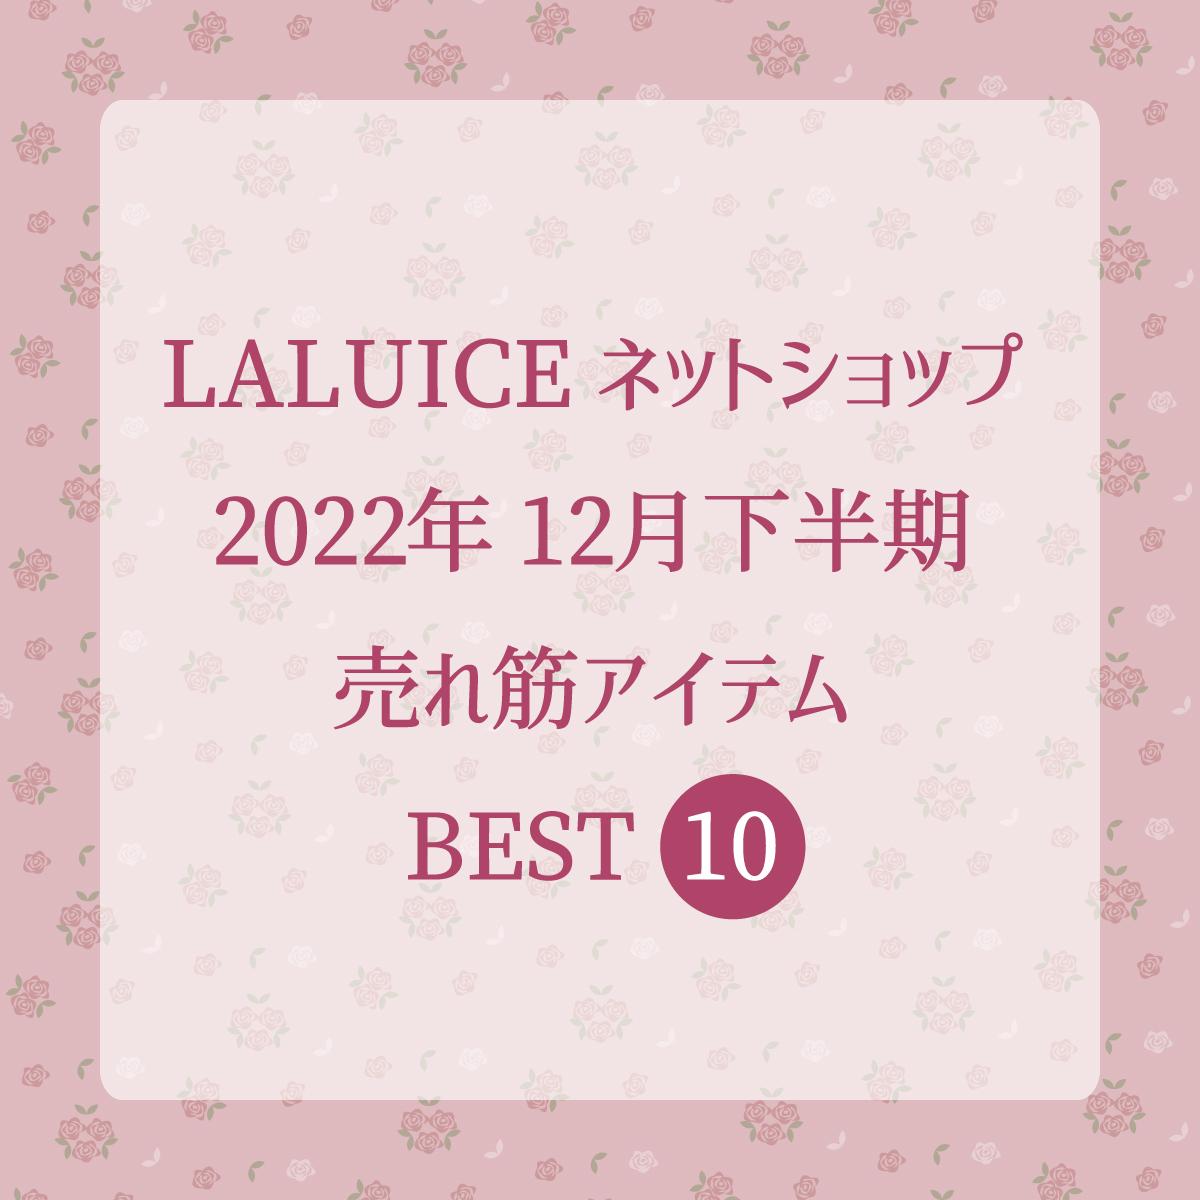 2022年12月下半期(12/16～12/31) LALUICEネットショップ売れ筋アイテム BEST10